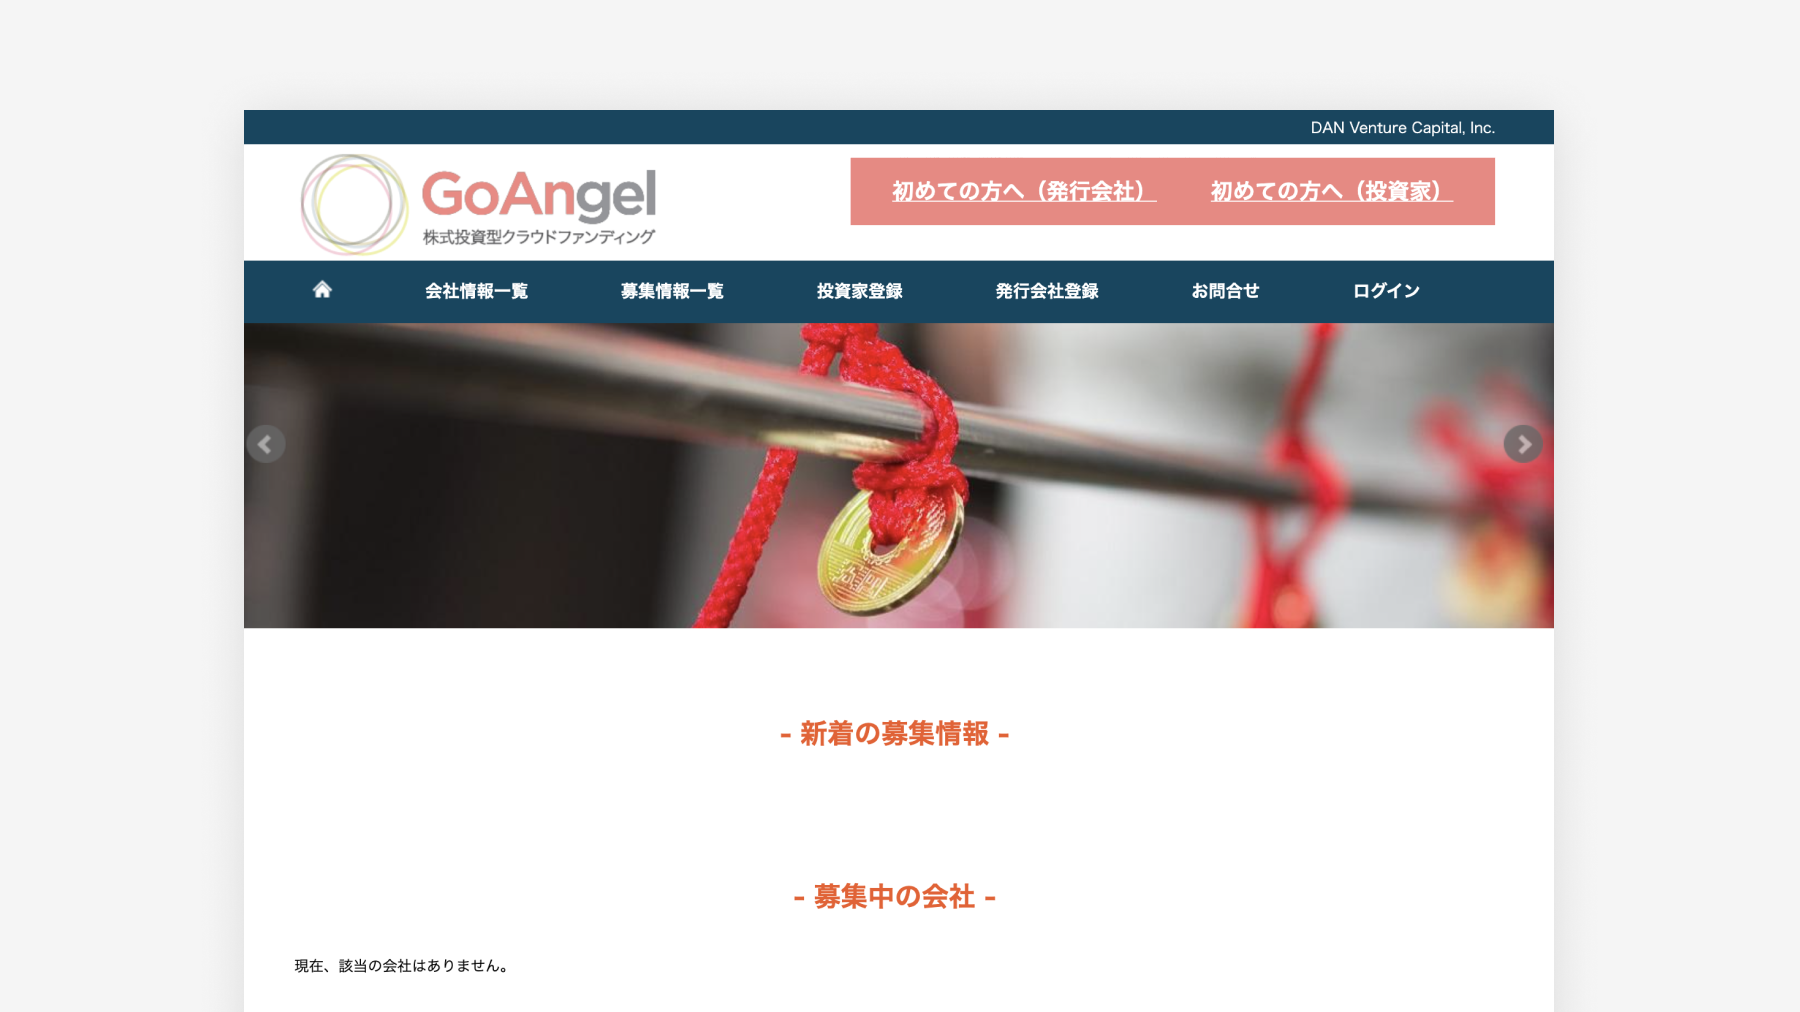 「GoAngel」サイトキャプチャ。